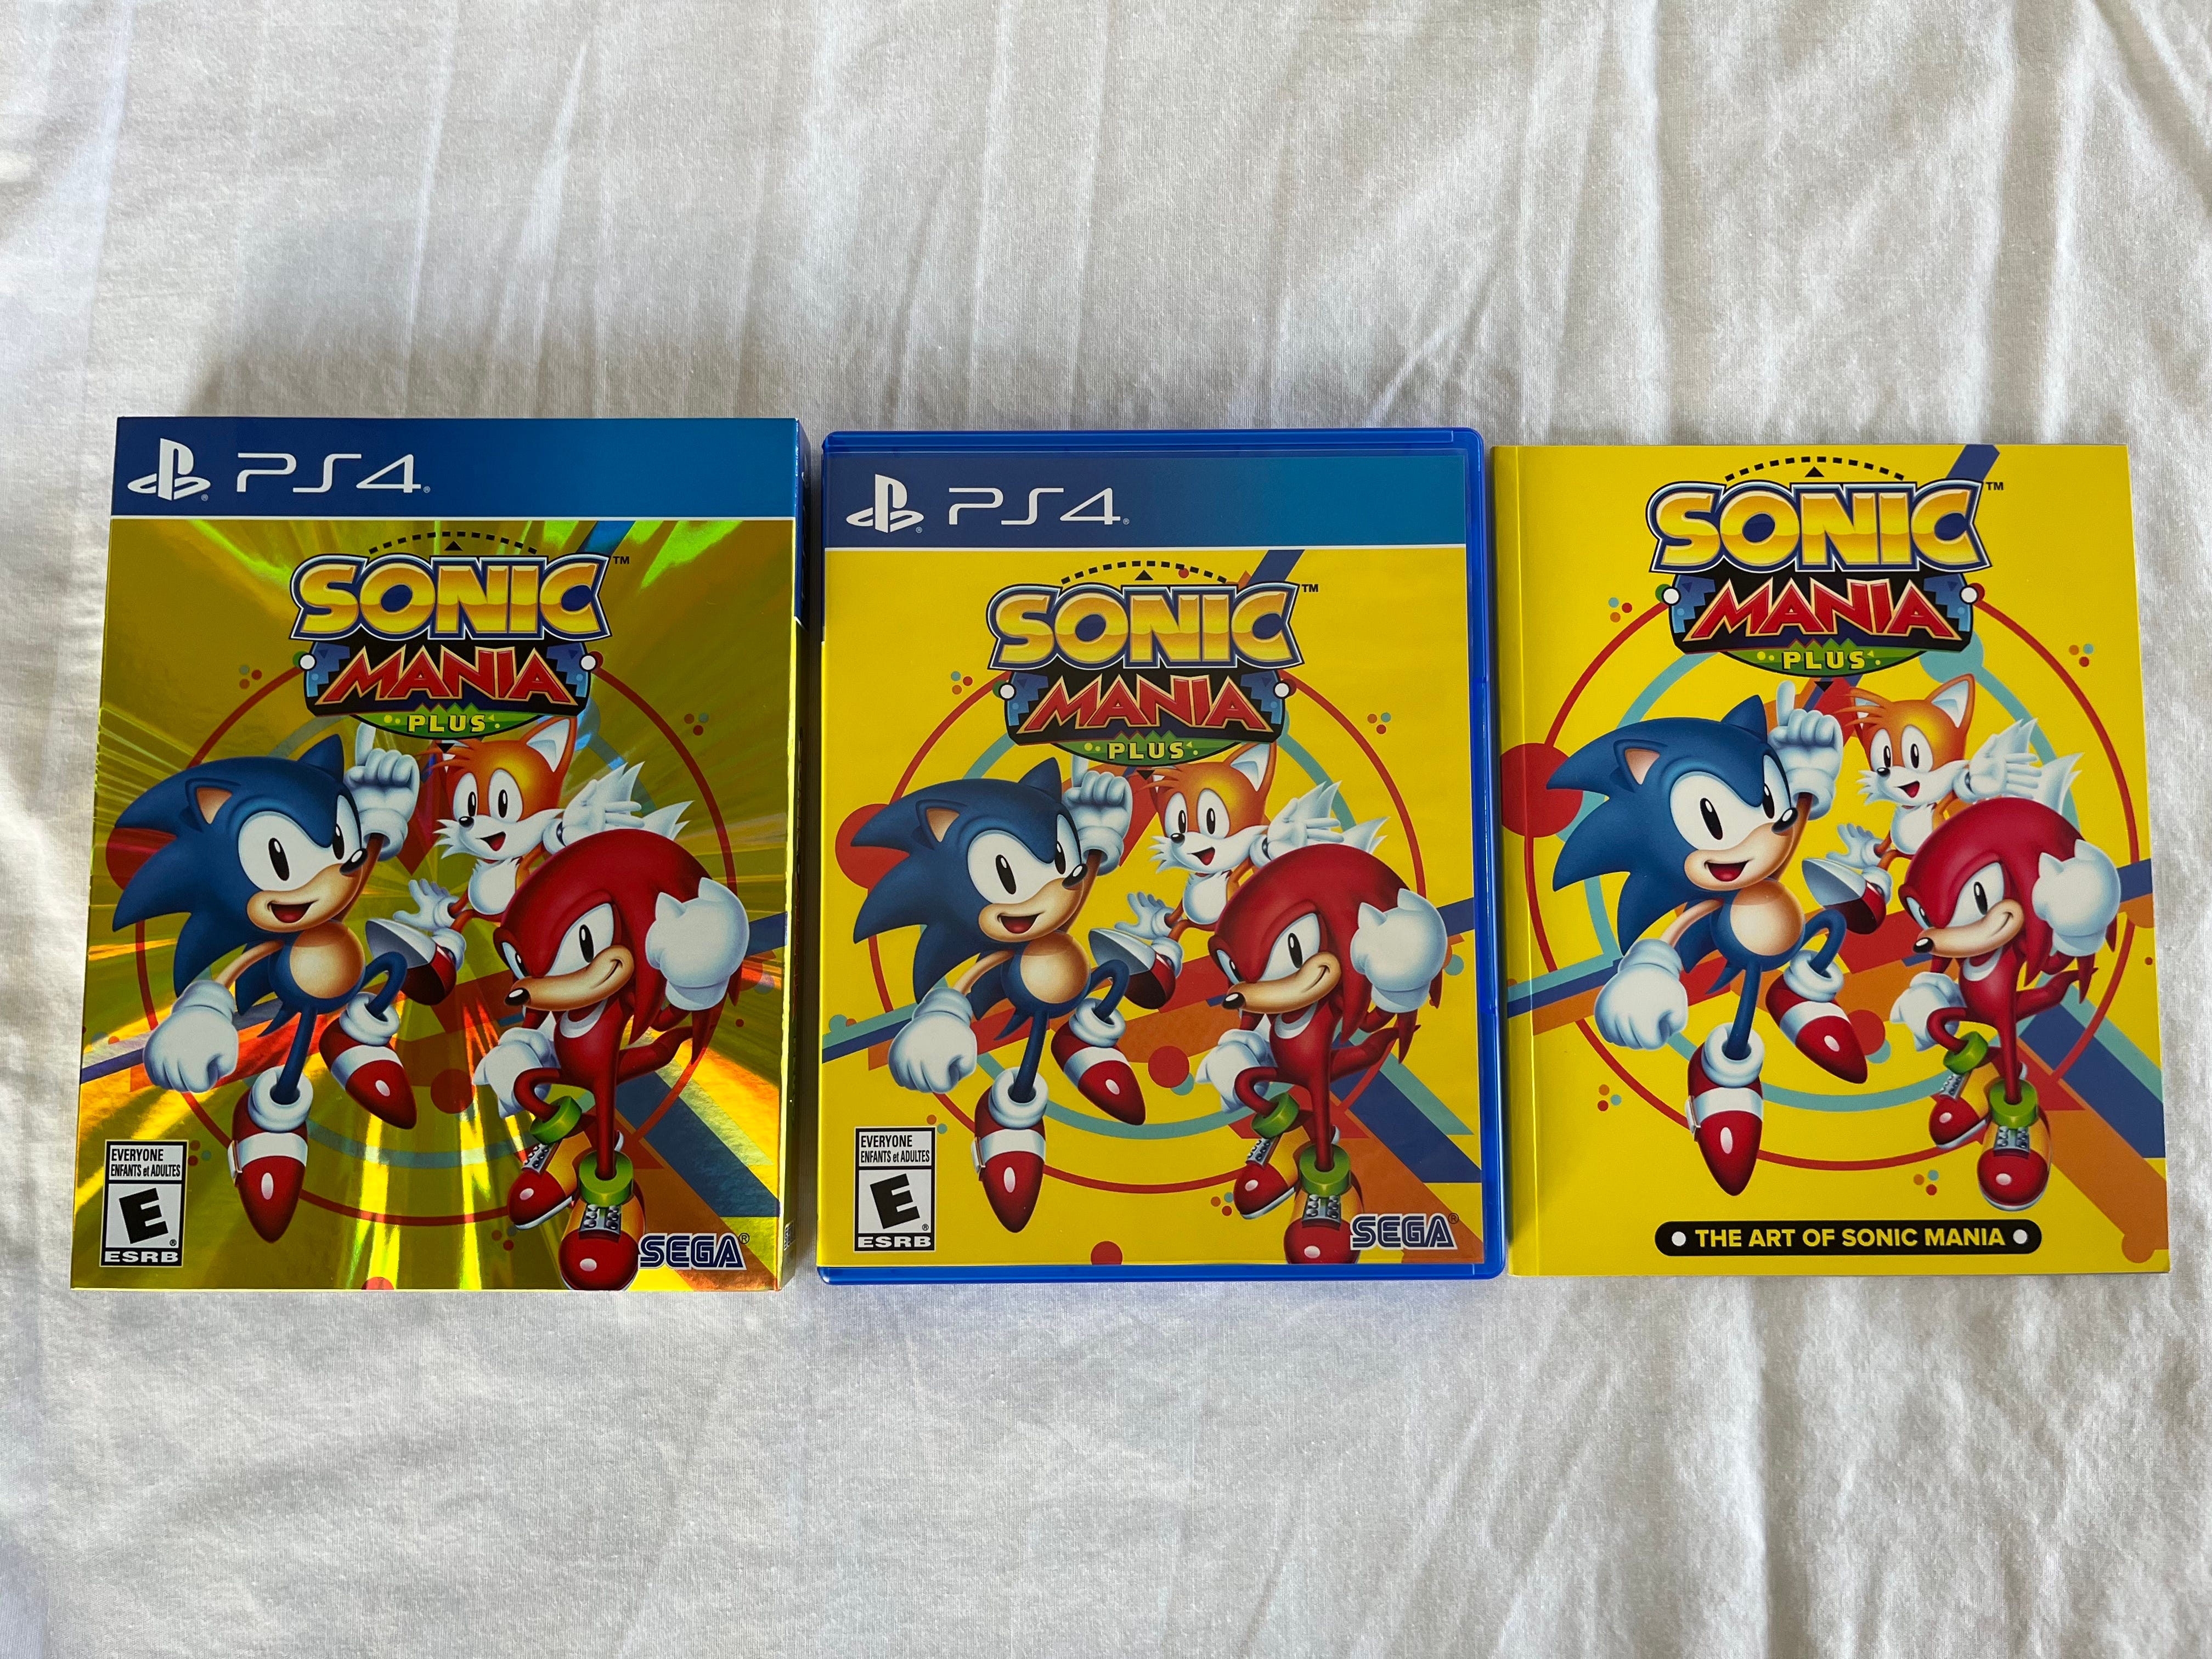 Sonic Mania Plus /PS4 